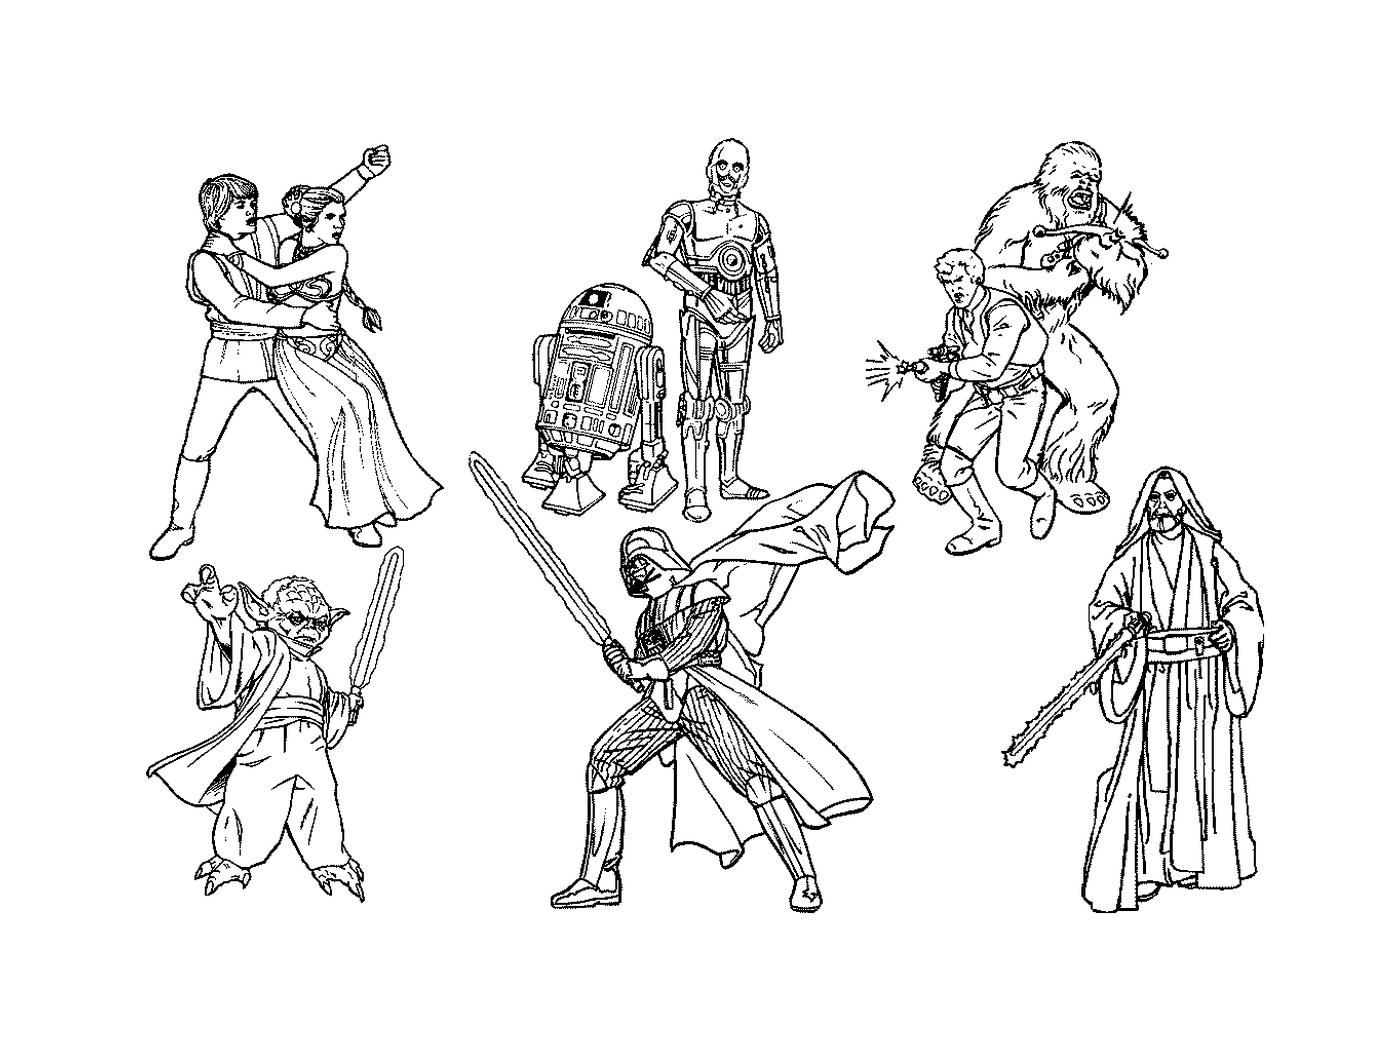  Schwarz-weiß-Zeichnung von Star Wars-Figuren 